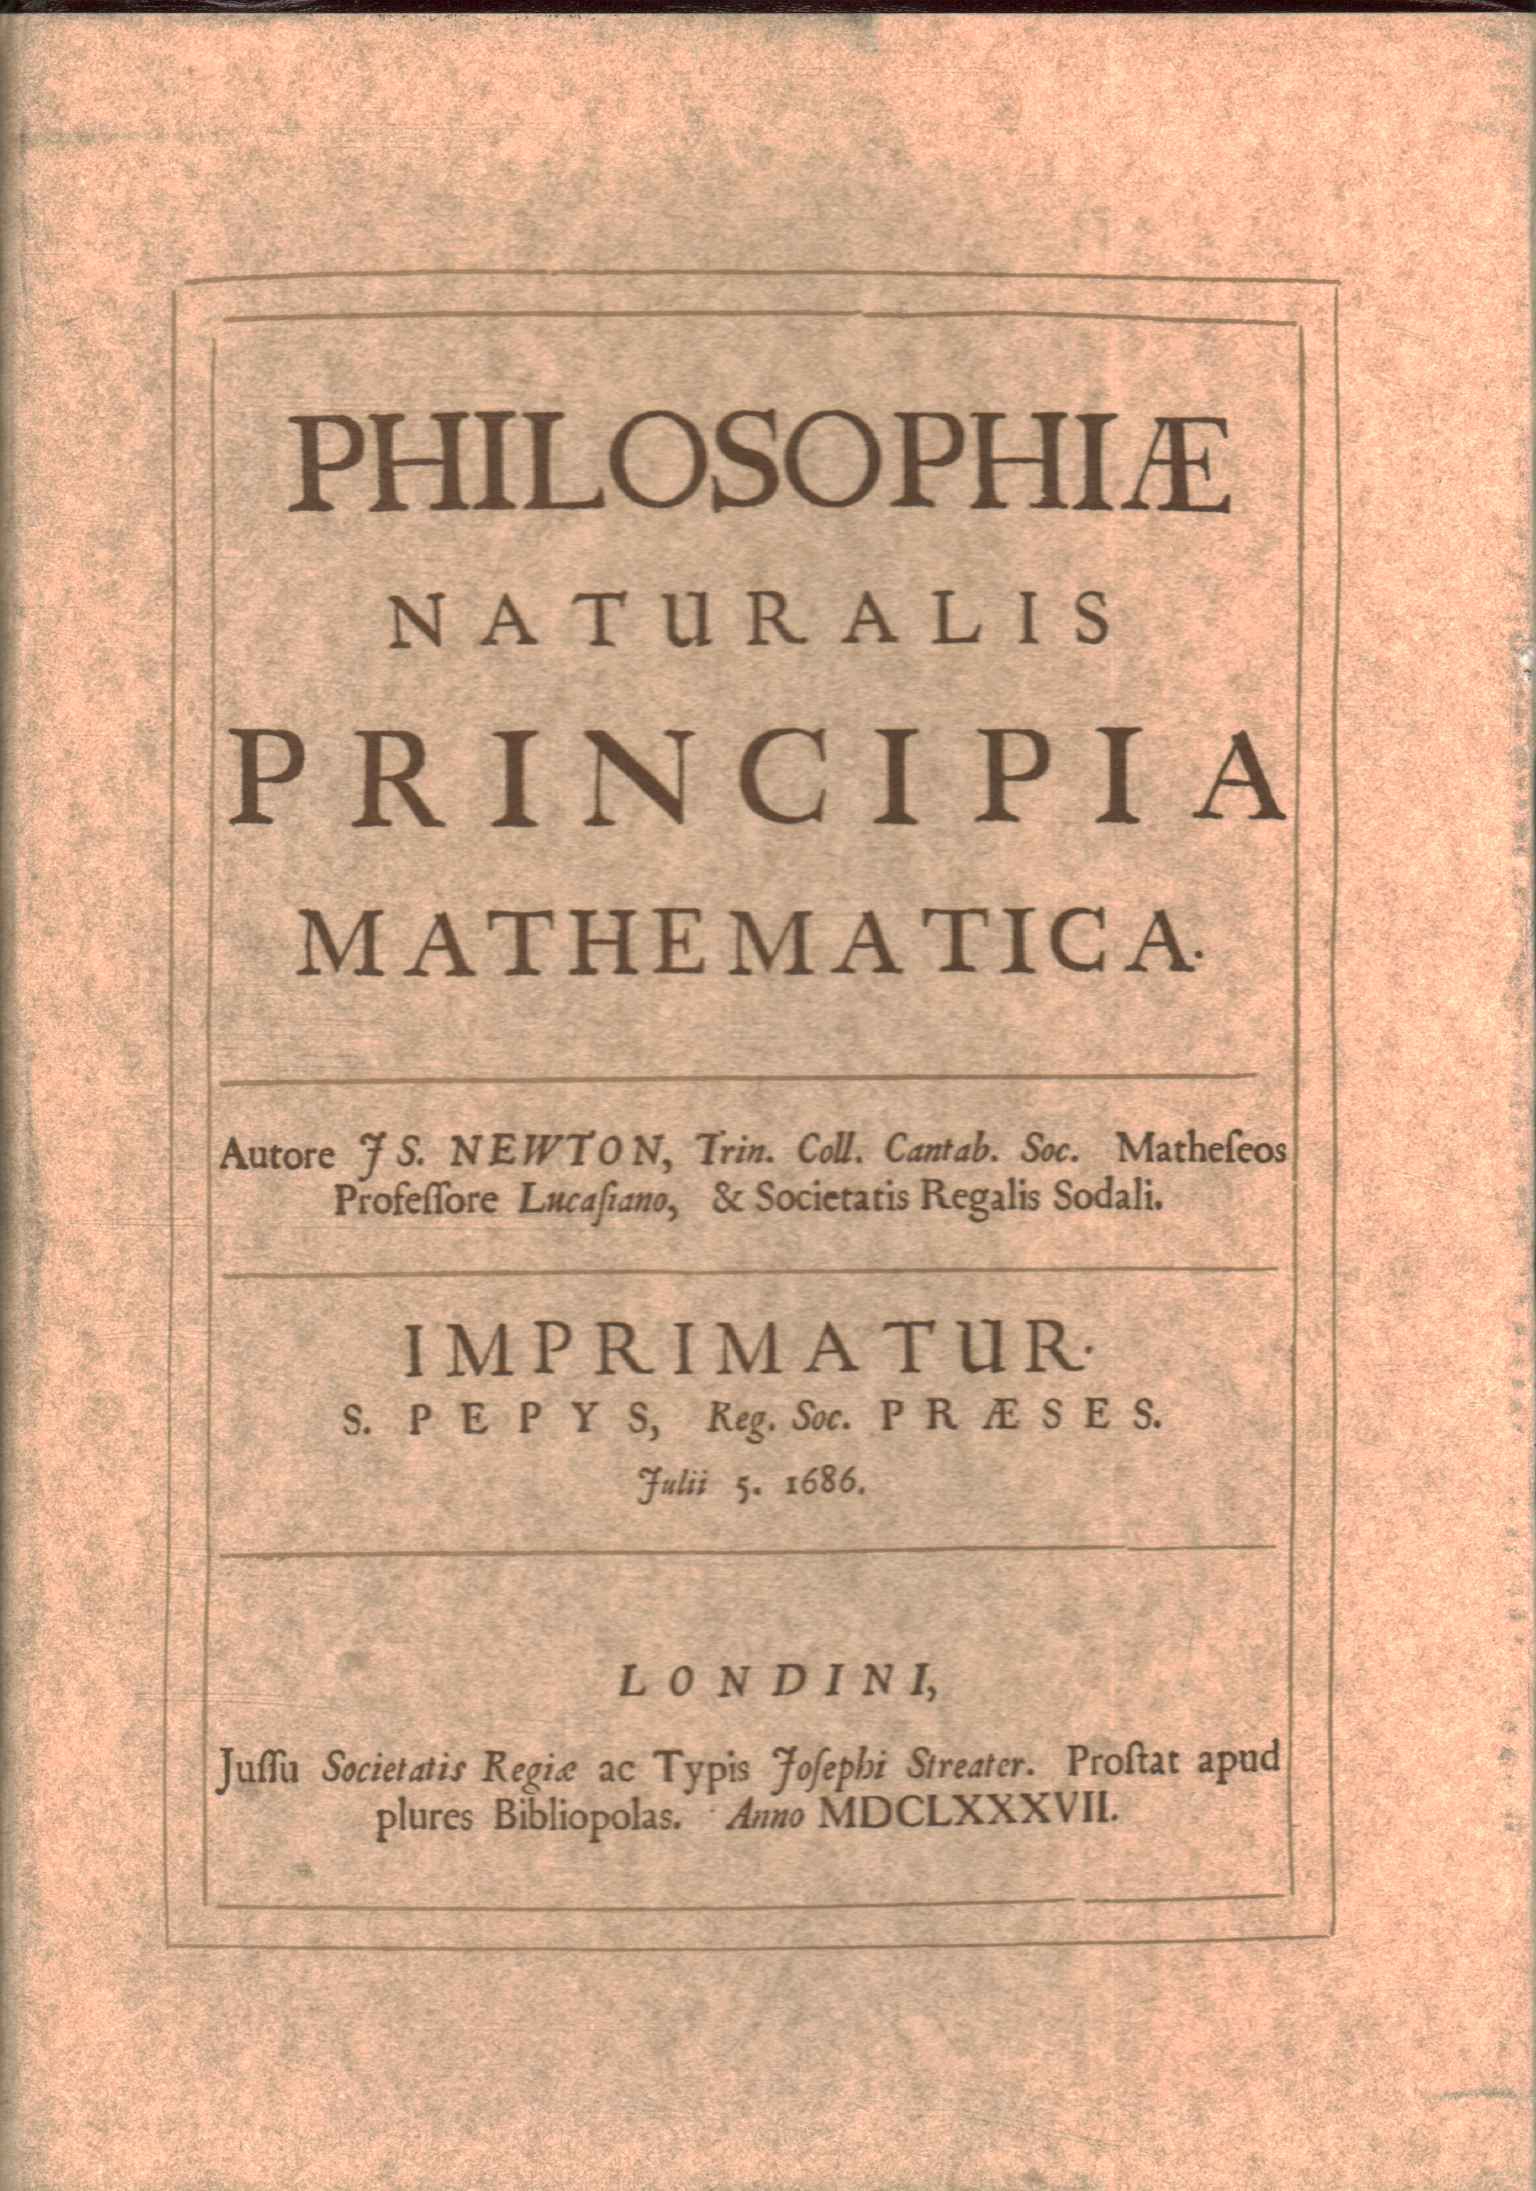 Principes mathématiques de philosophie naturelle